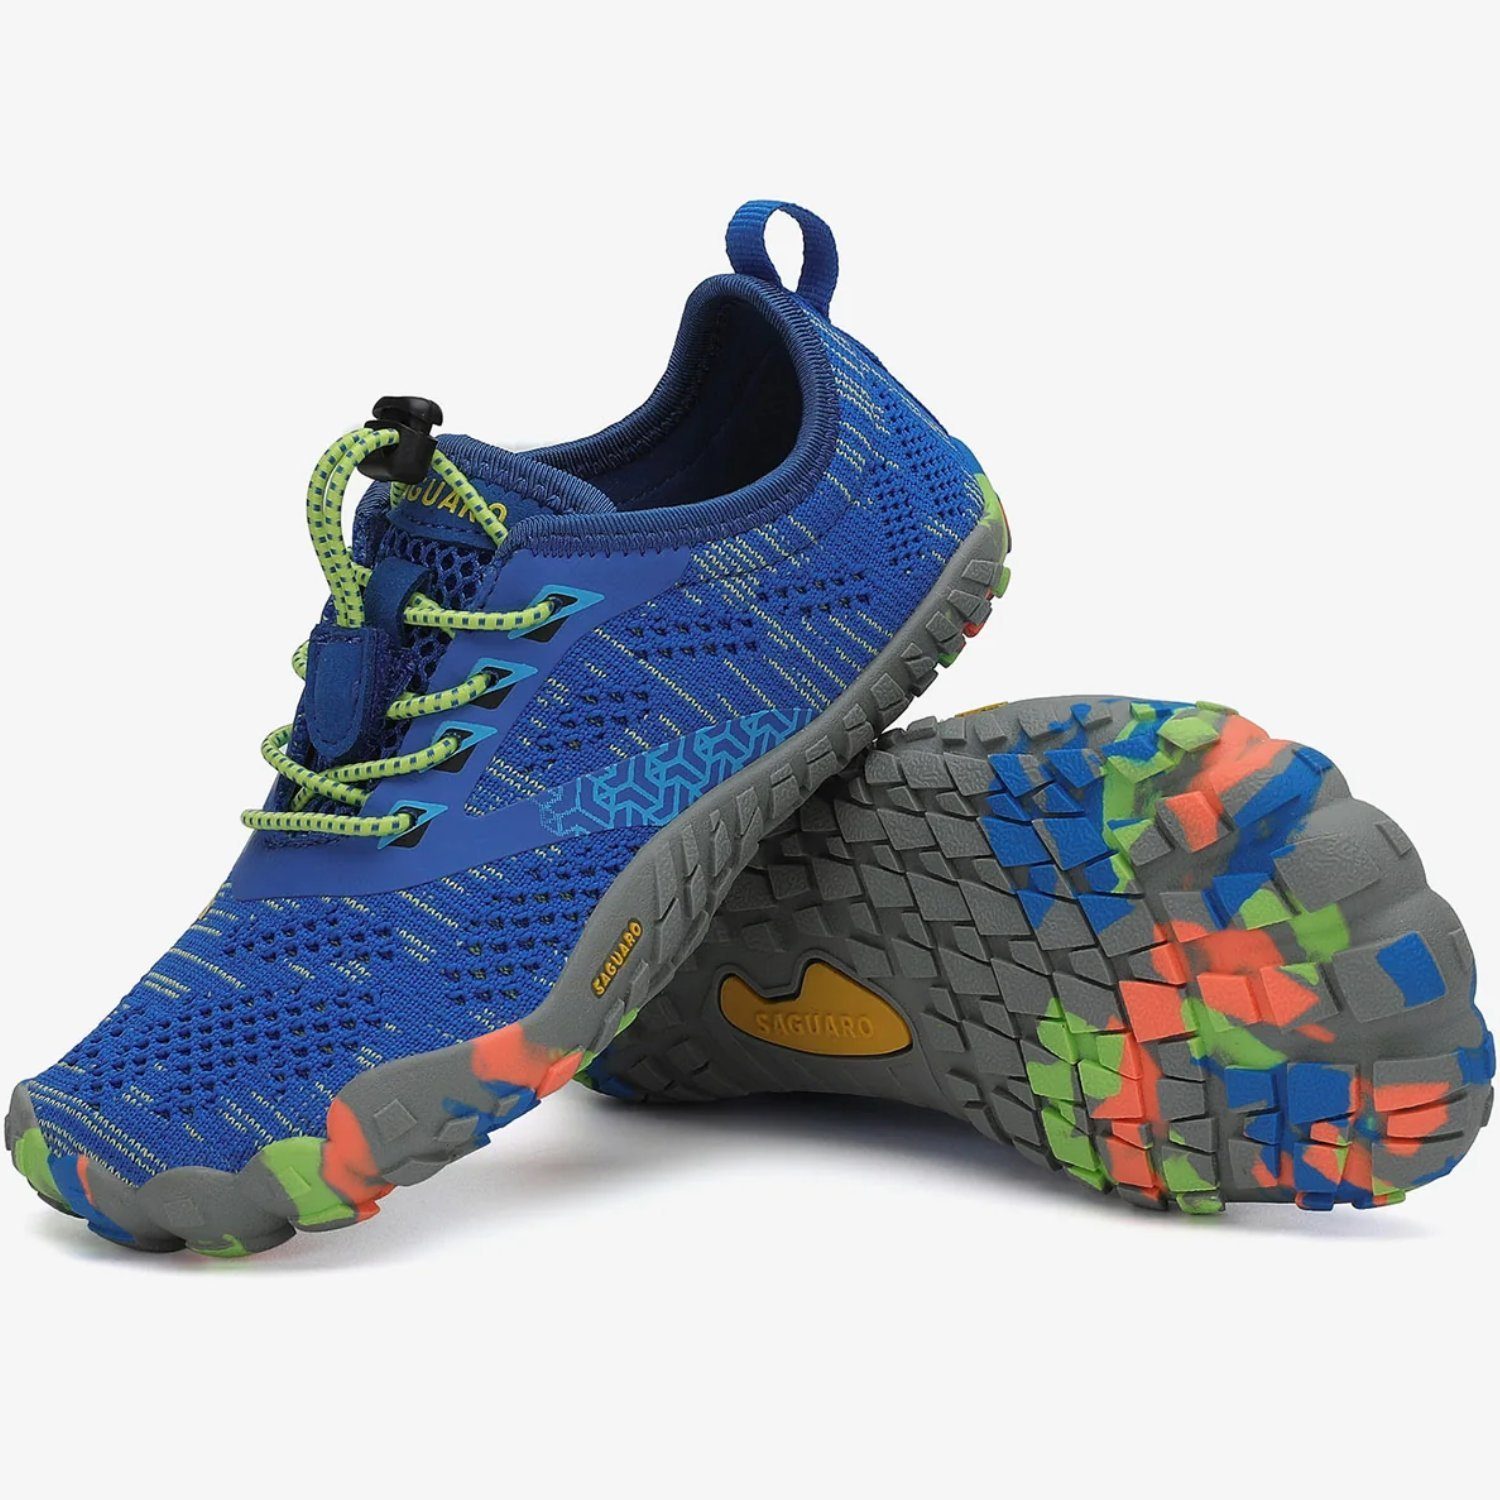 atmungsaktiv, 025 Sneaker Kids leicht, (bequem, rutschfest) Sport-Schuhe SAGUARO Trail-Running Laufschuhe Minimalschuhe Jogging Blau Barfußschuh